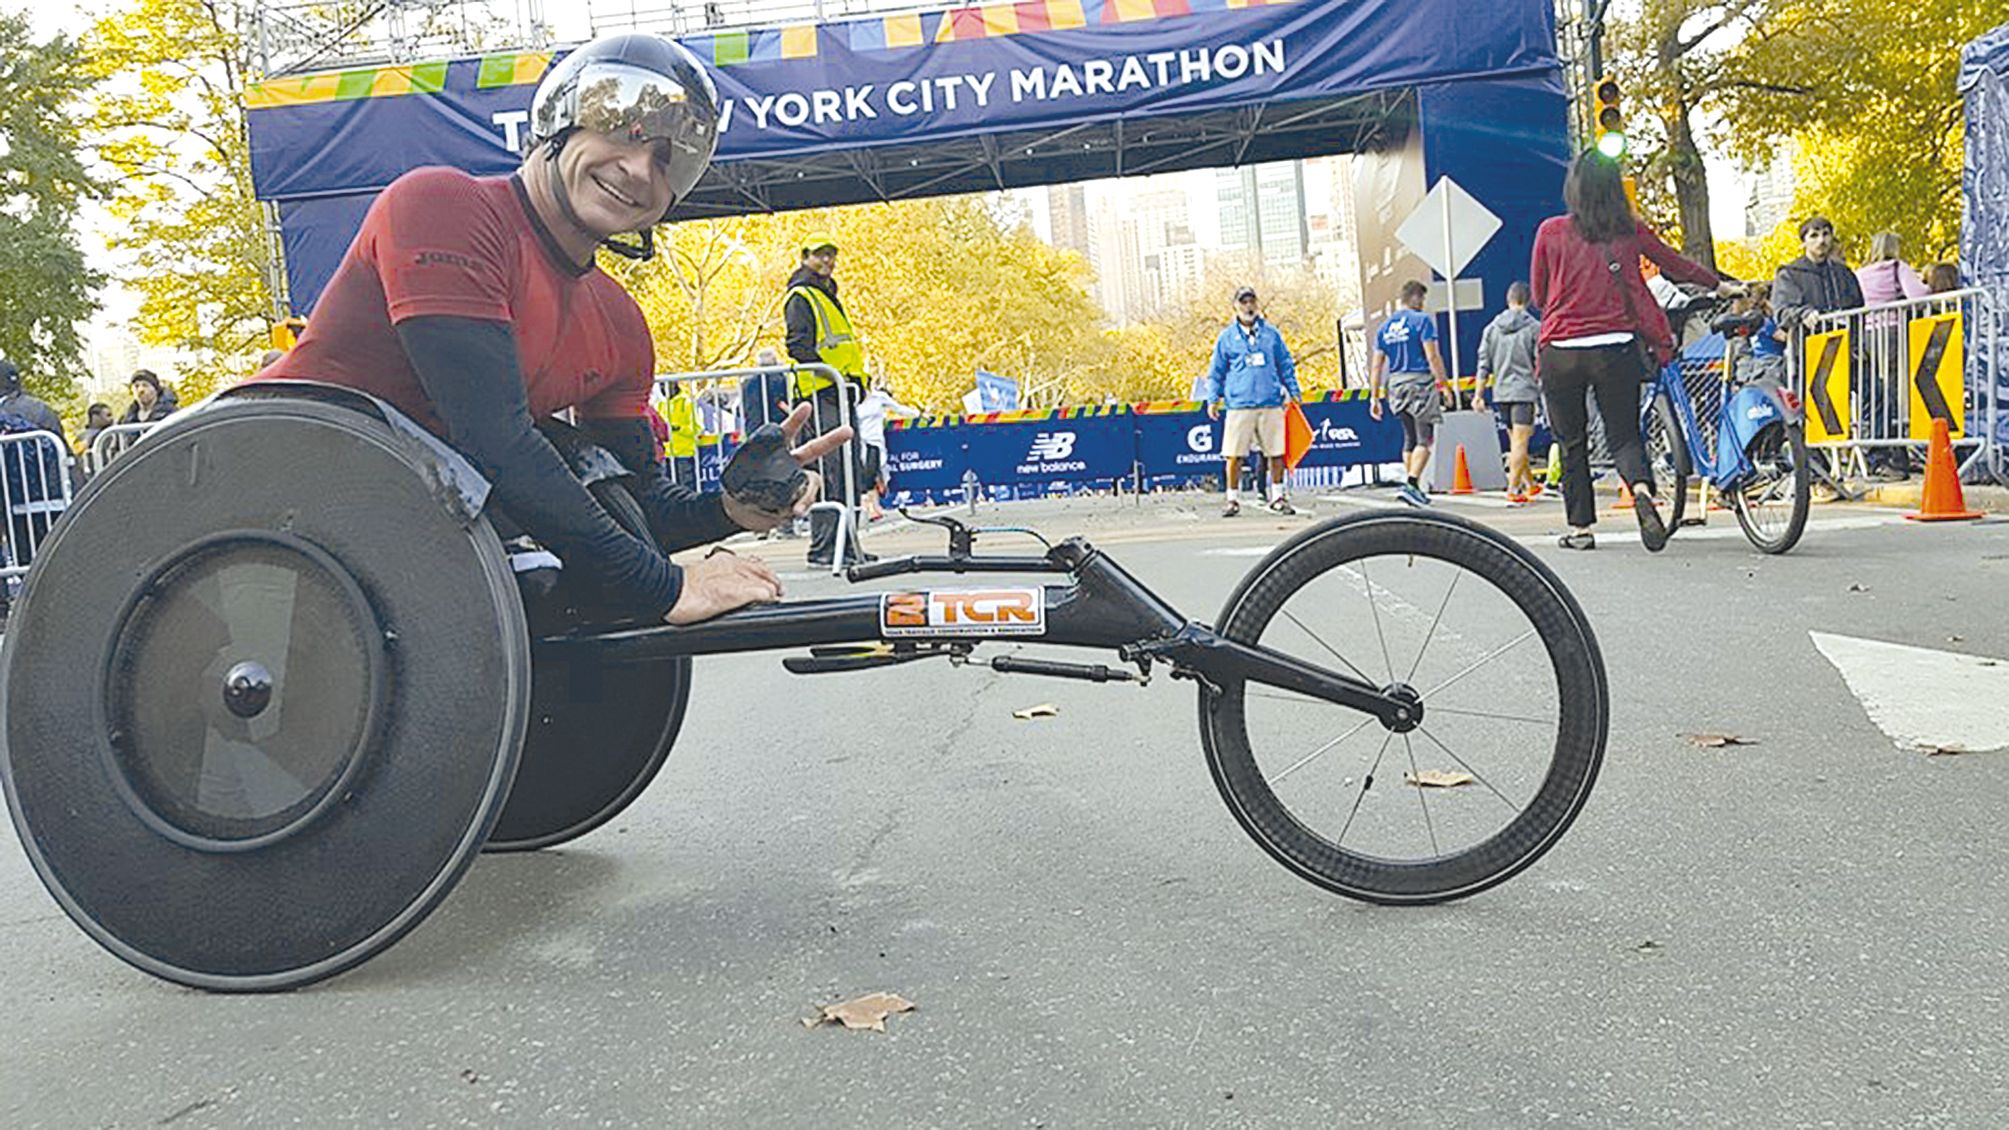 Lors de son dernier marathon, à New York en novembre dernier, Pierre Fairbank avait fini 6e en 1h 39’58’’.